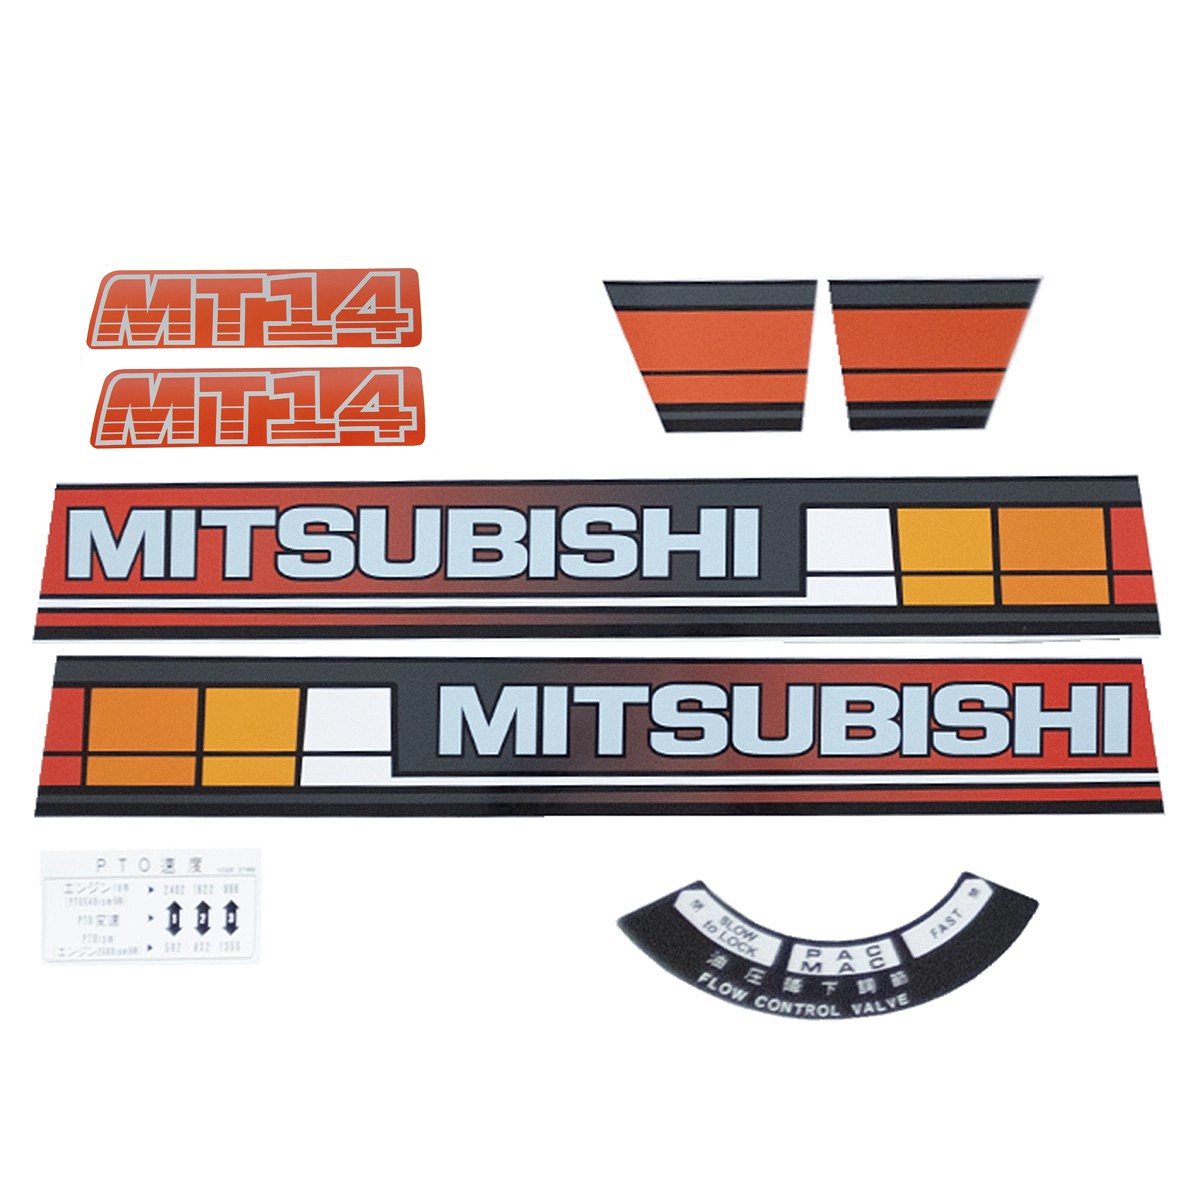 Mitsubishi MT14 stickers